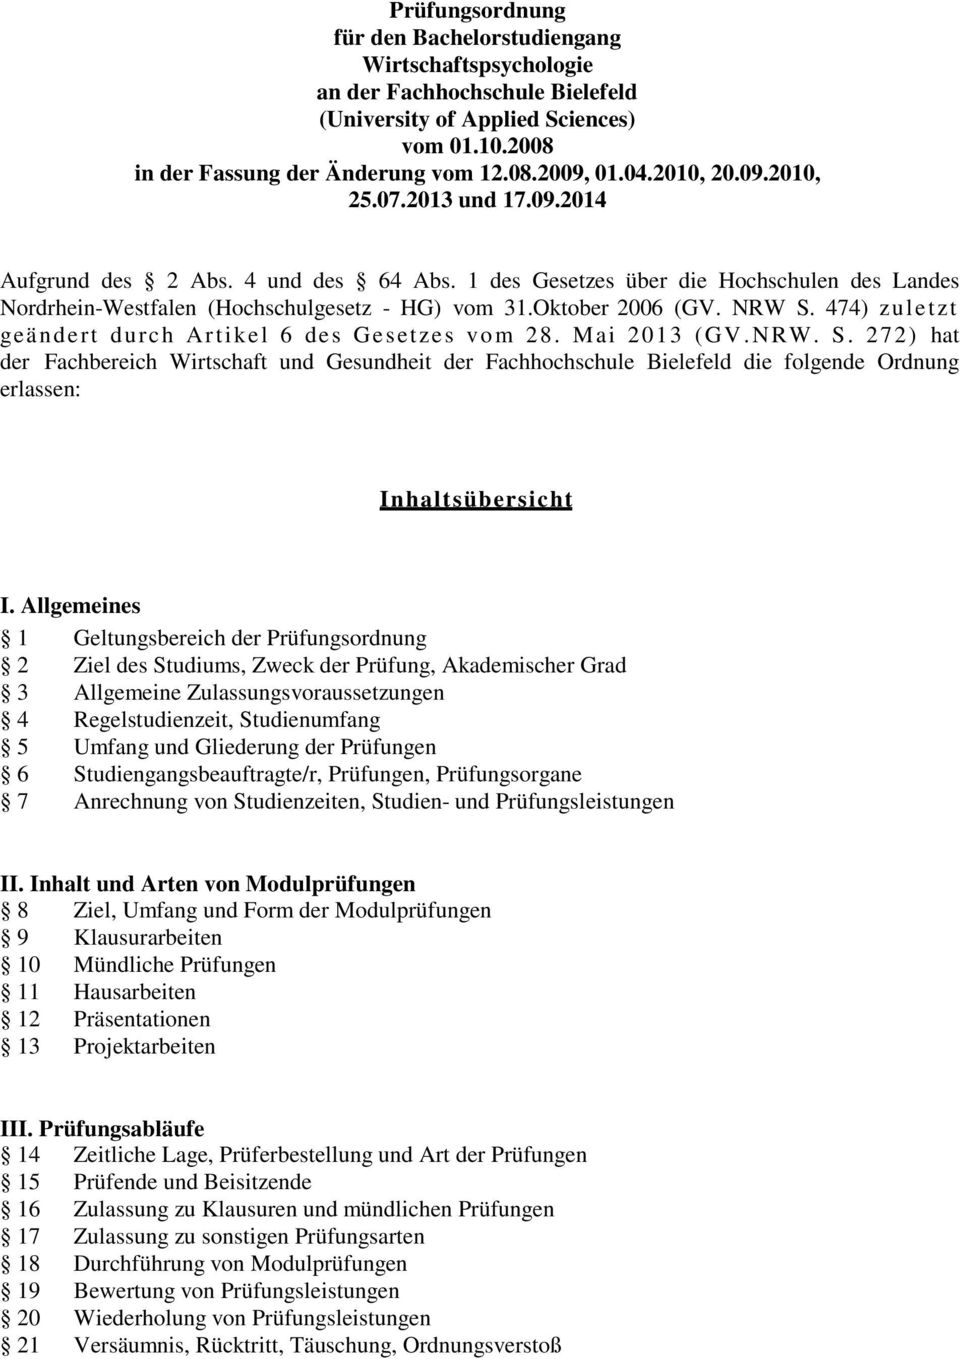 NRW S. 474) zuletzt geändert durch Artikel 6 des Gesetzes vom 28. Mai 2013 (GV.NRW. S. 272) hat der Fachbereich Wirtschaft und Gesundheit der Fachhochschule Bielefeld die folgende Ordnung erlassen: I n h a l t s ü b e r s i c h t I.